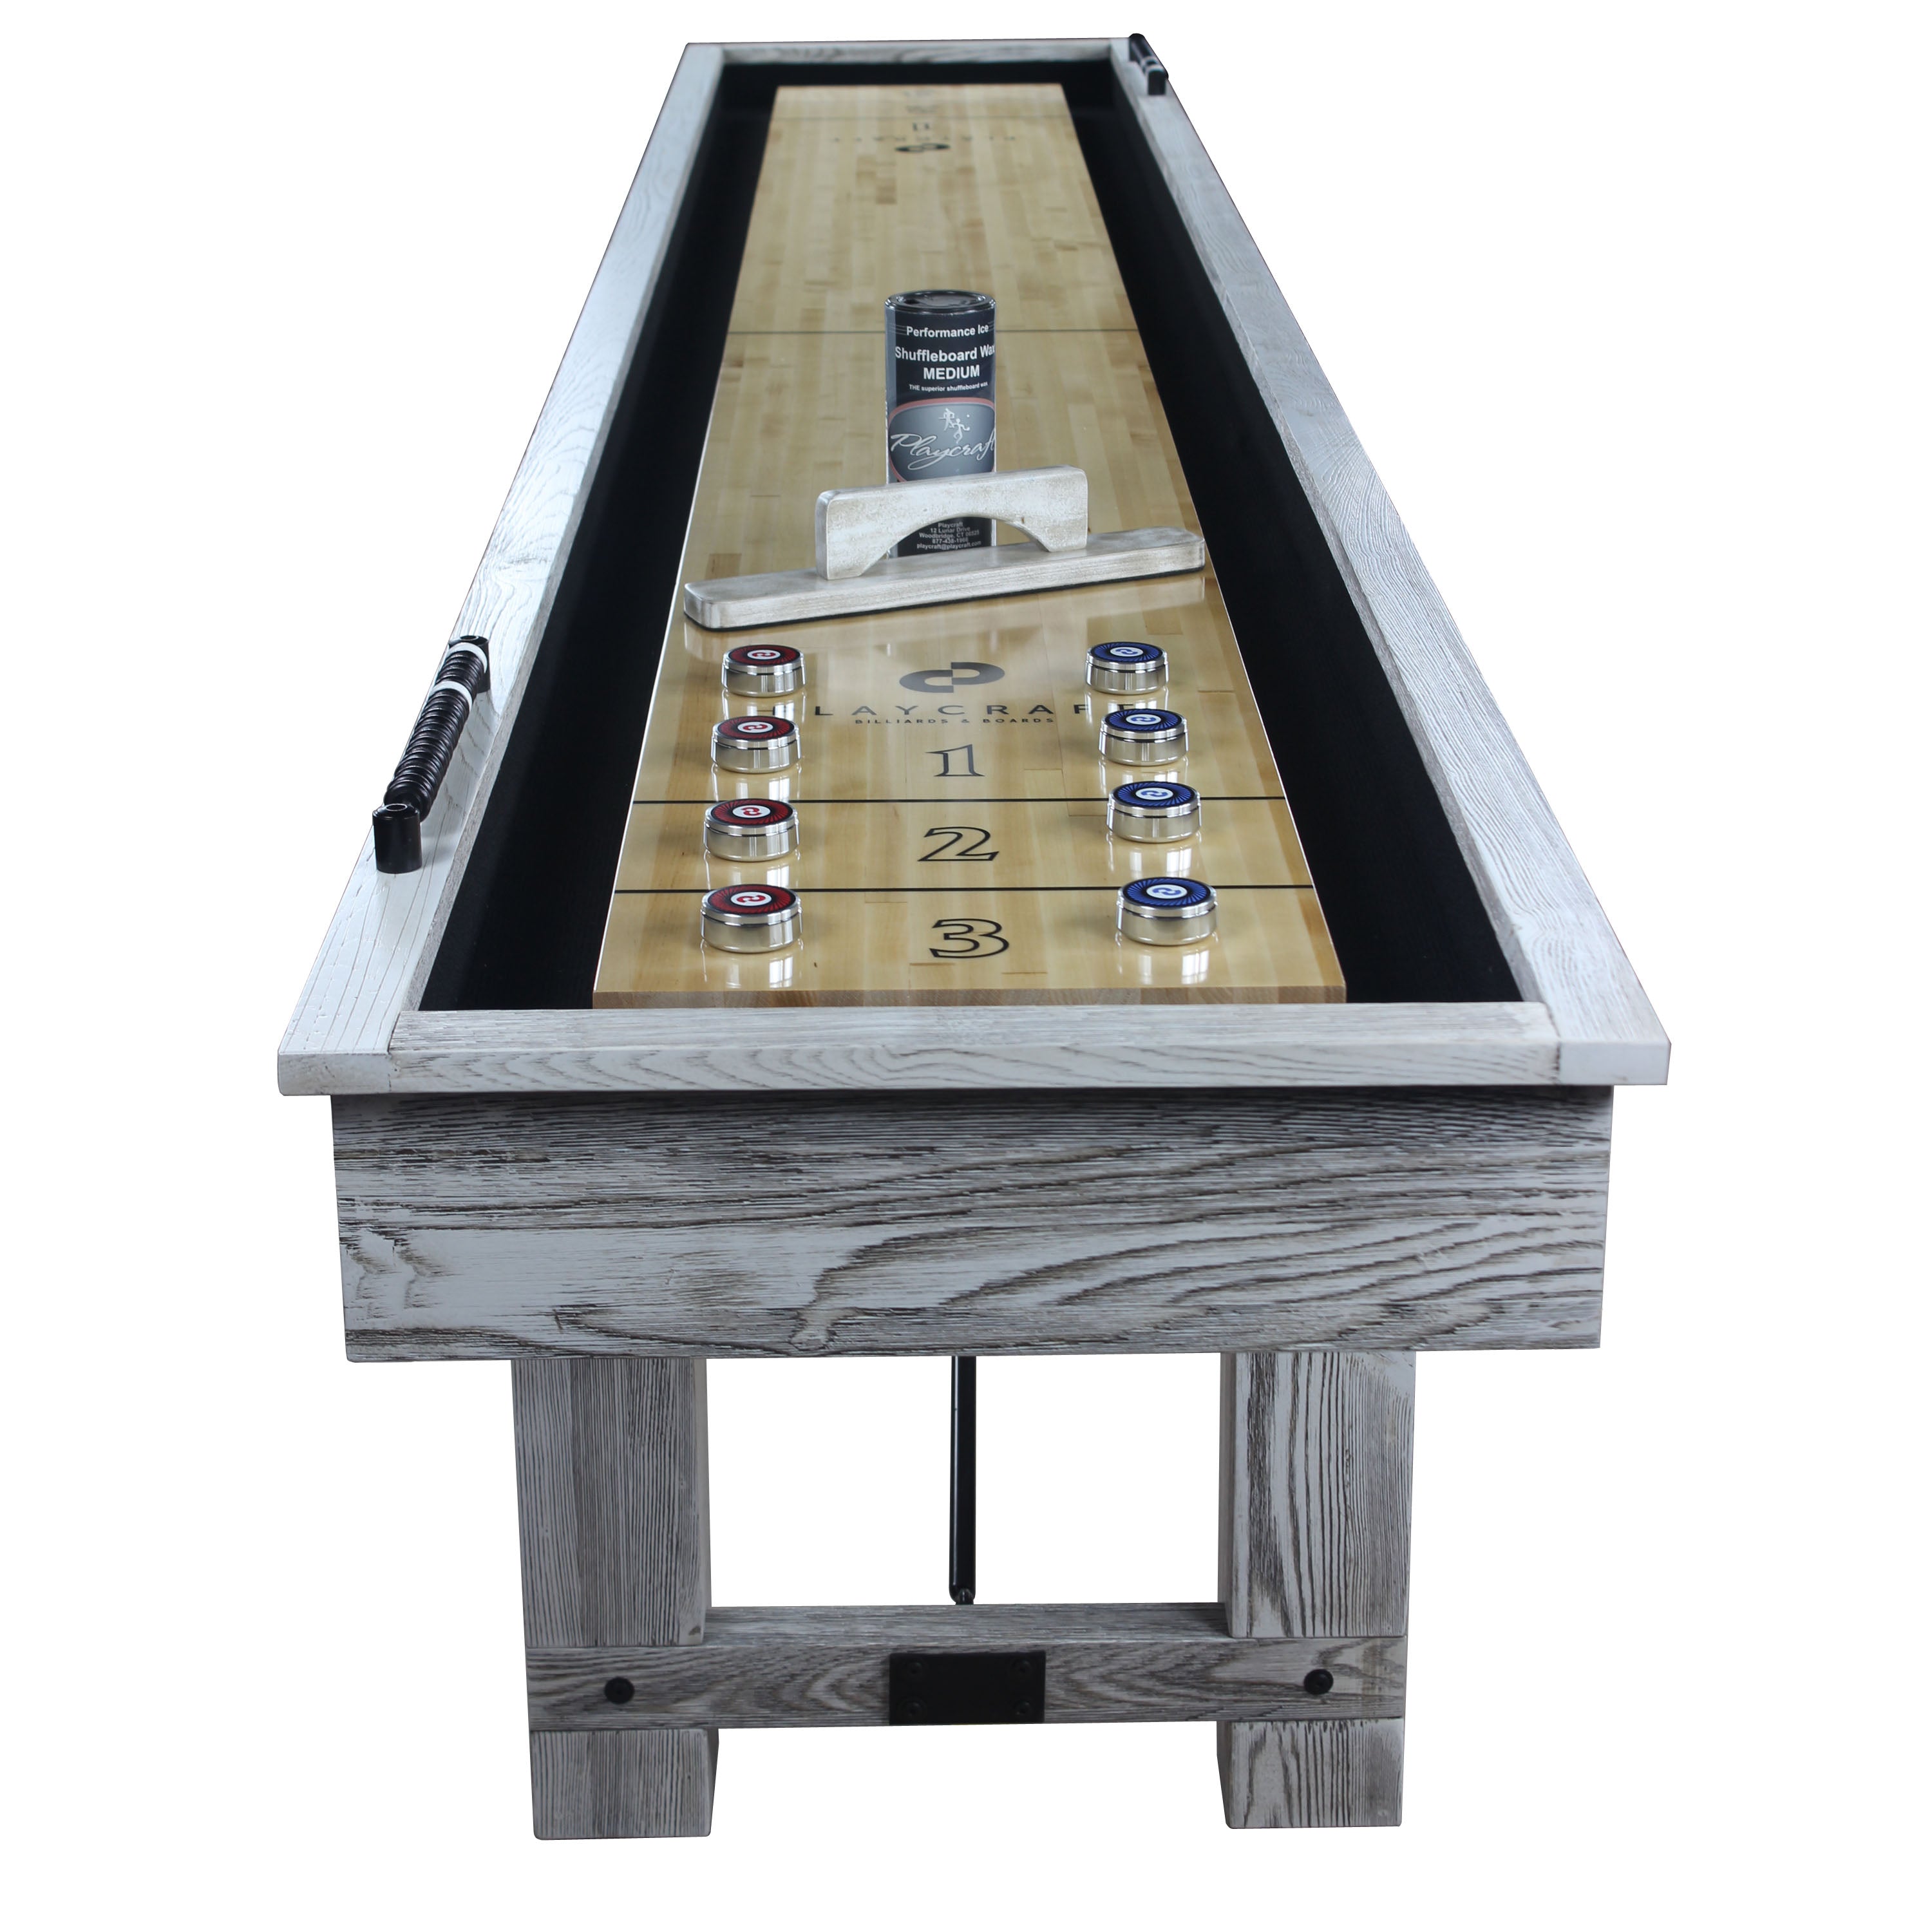 Playcraft 9' Montauk Shuffleboard Table in Weathered Whitewash